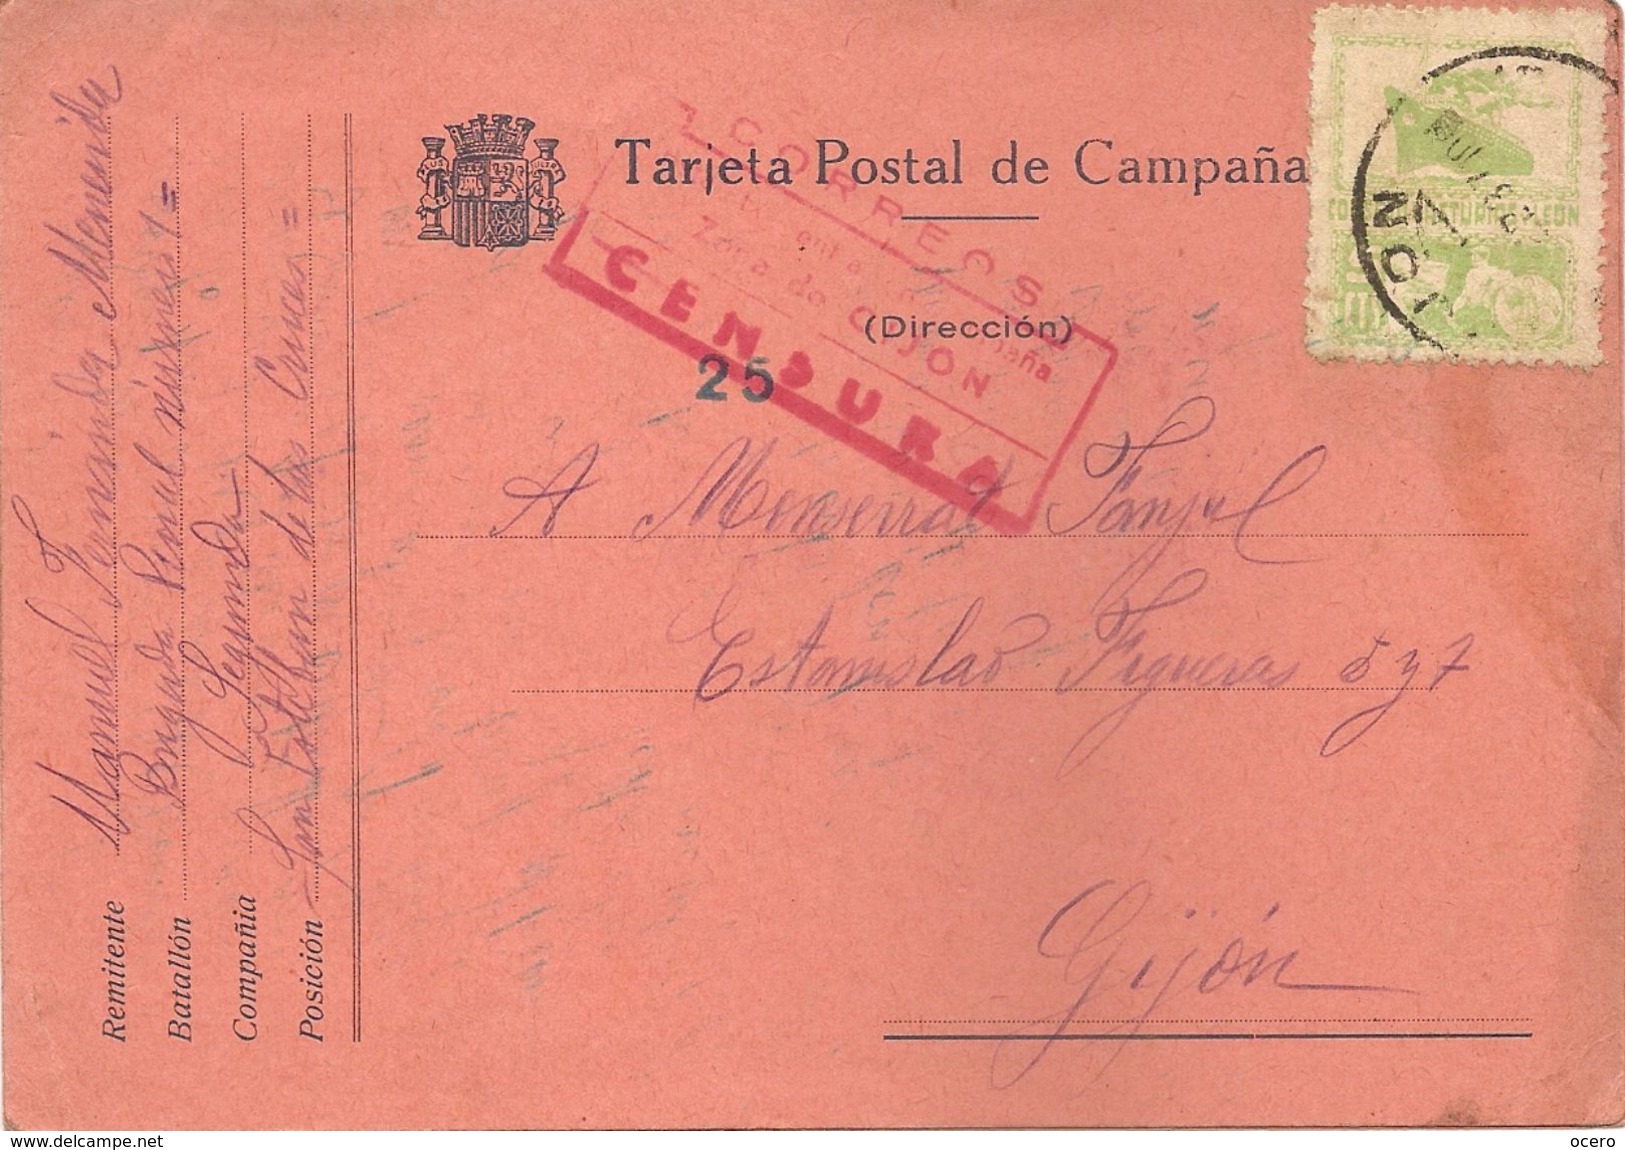 Tarjeta Postal De Campaña, Consejo De Asturias Y León, Con Censura En Rojo, 7 De Septiembre De 1937 - Asturies & Leon